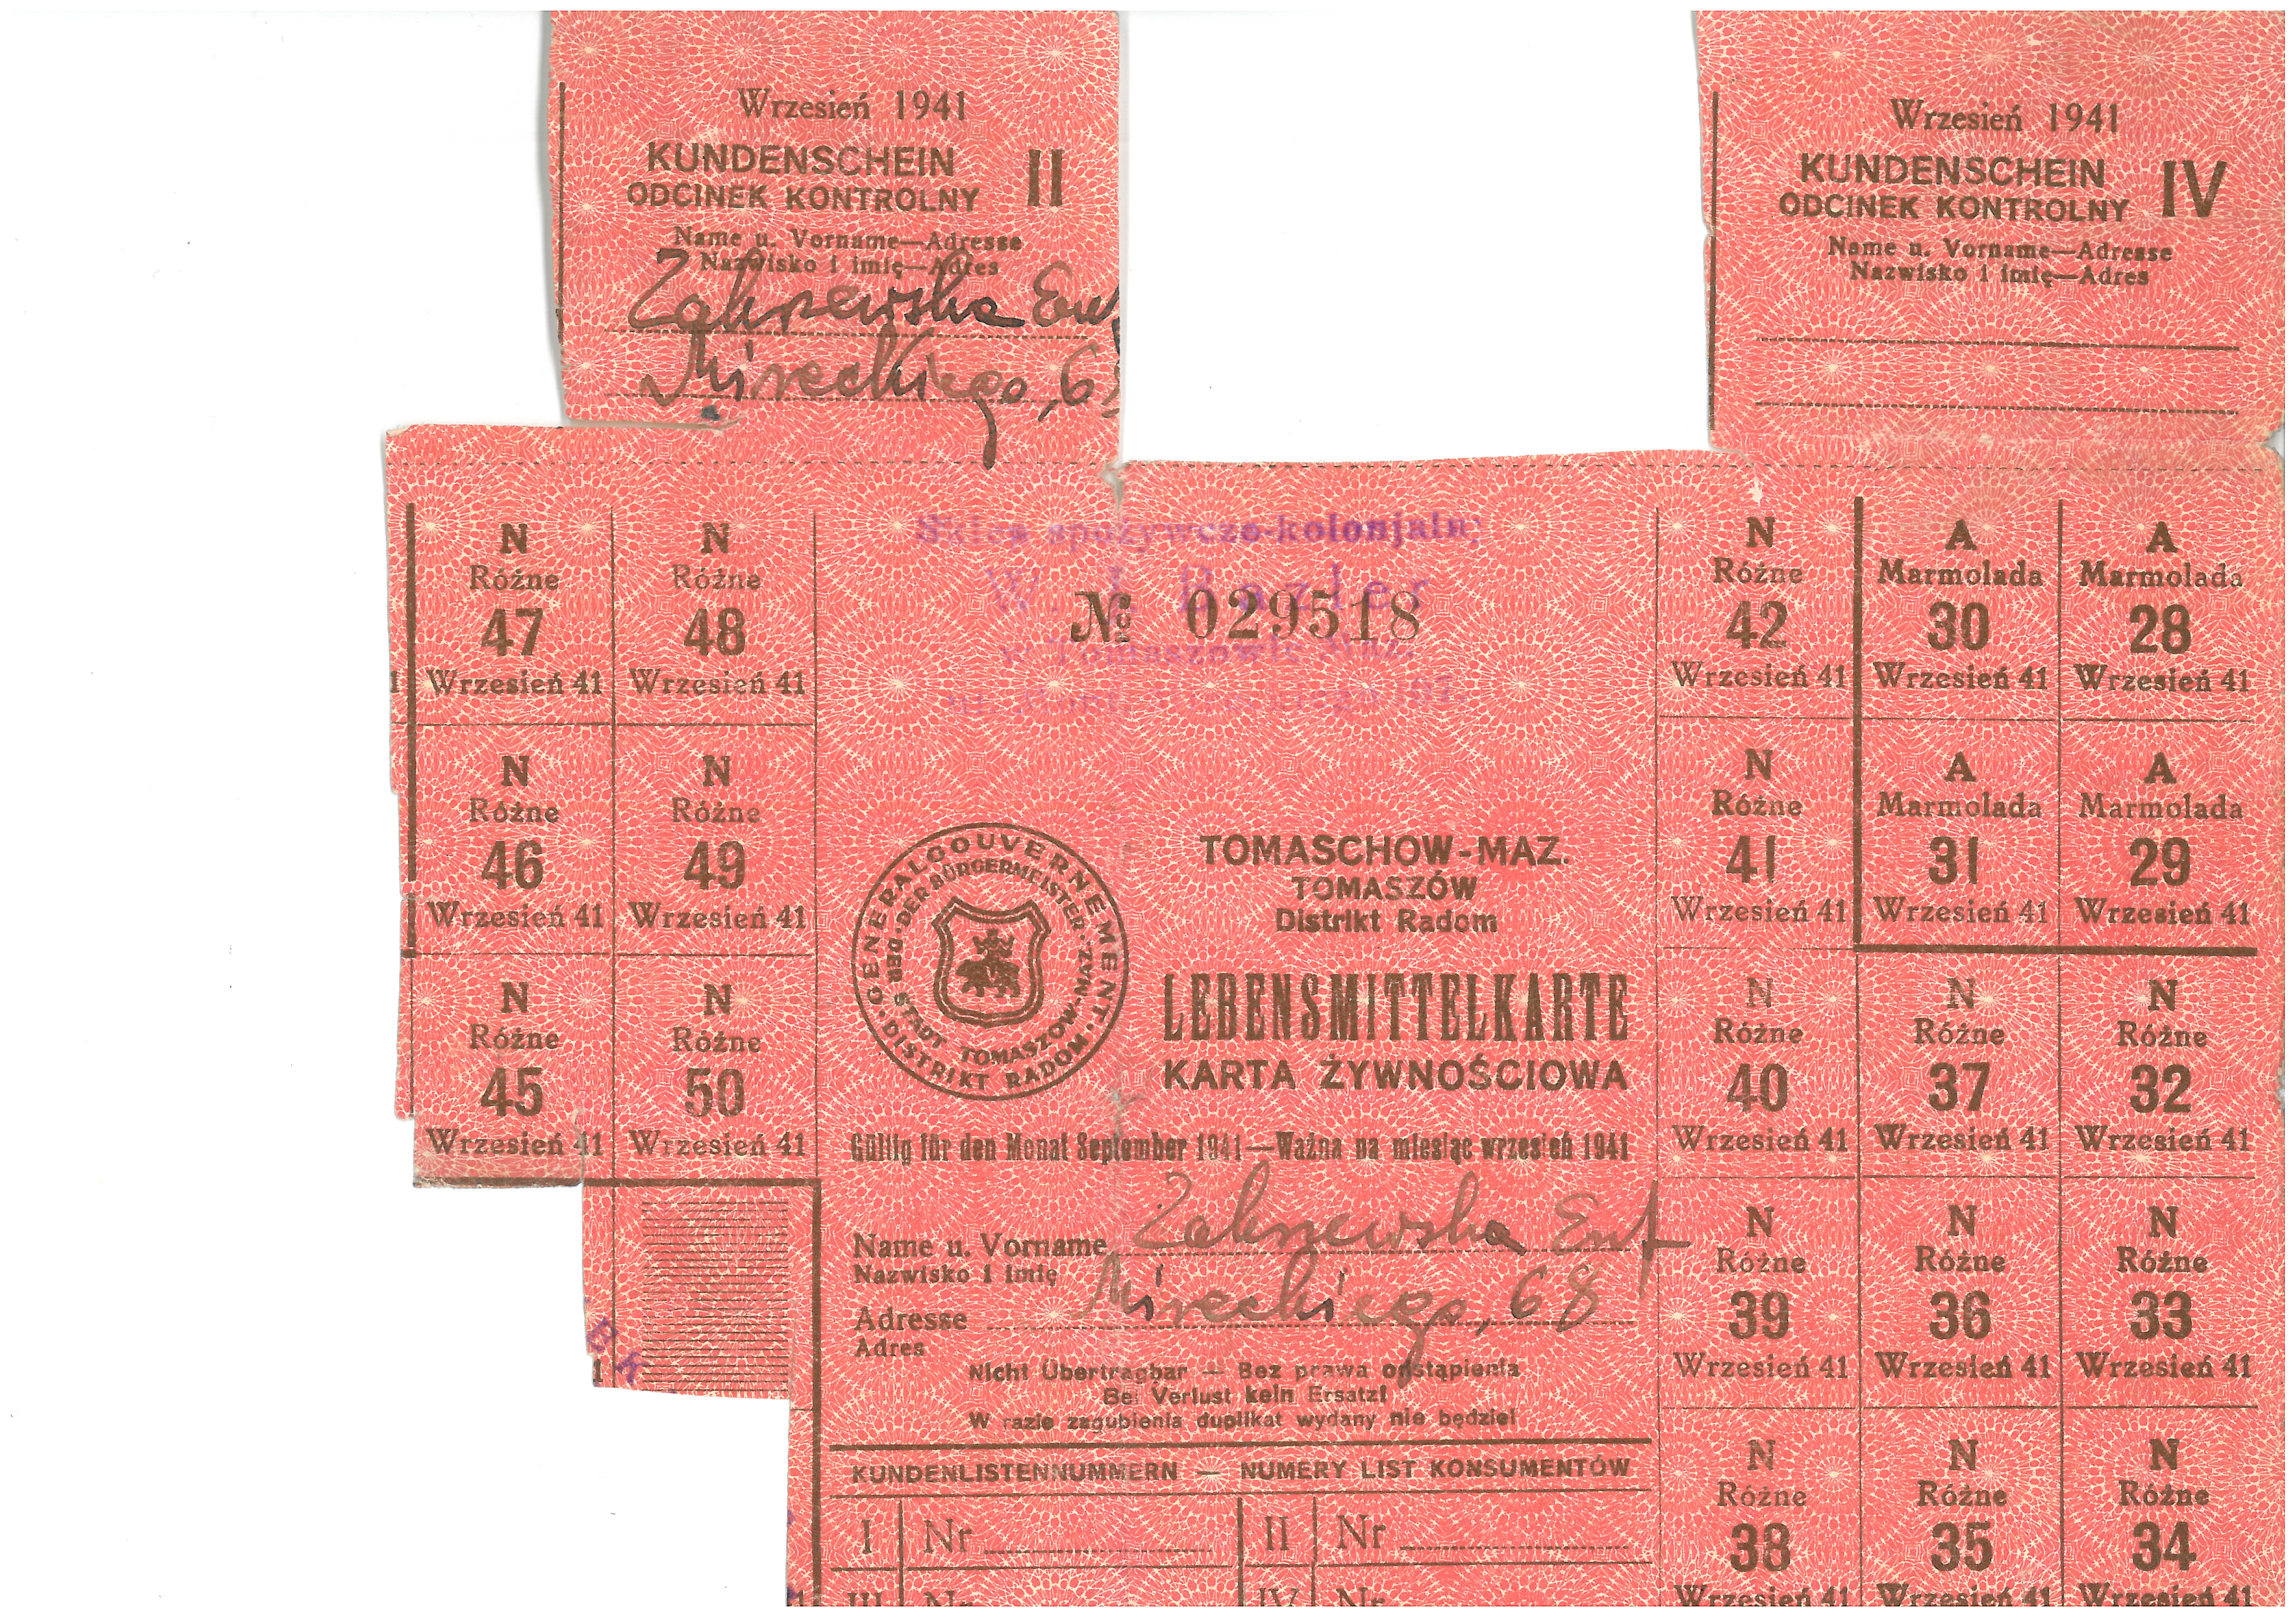 Kartki żywnościowe z okresu okupacji niemieckiej doby II wojny światowej.